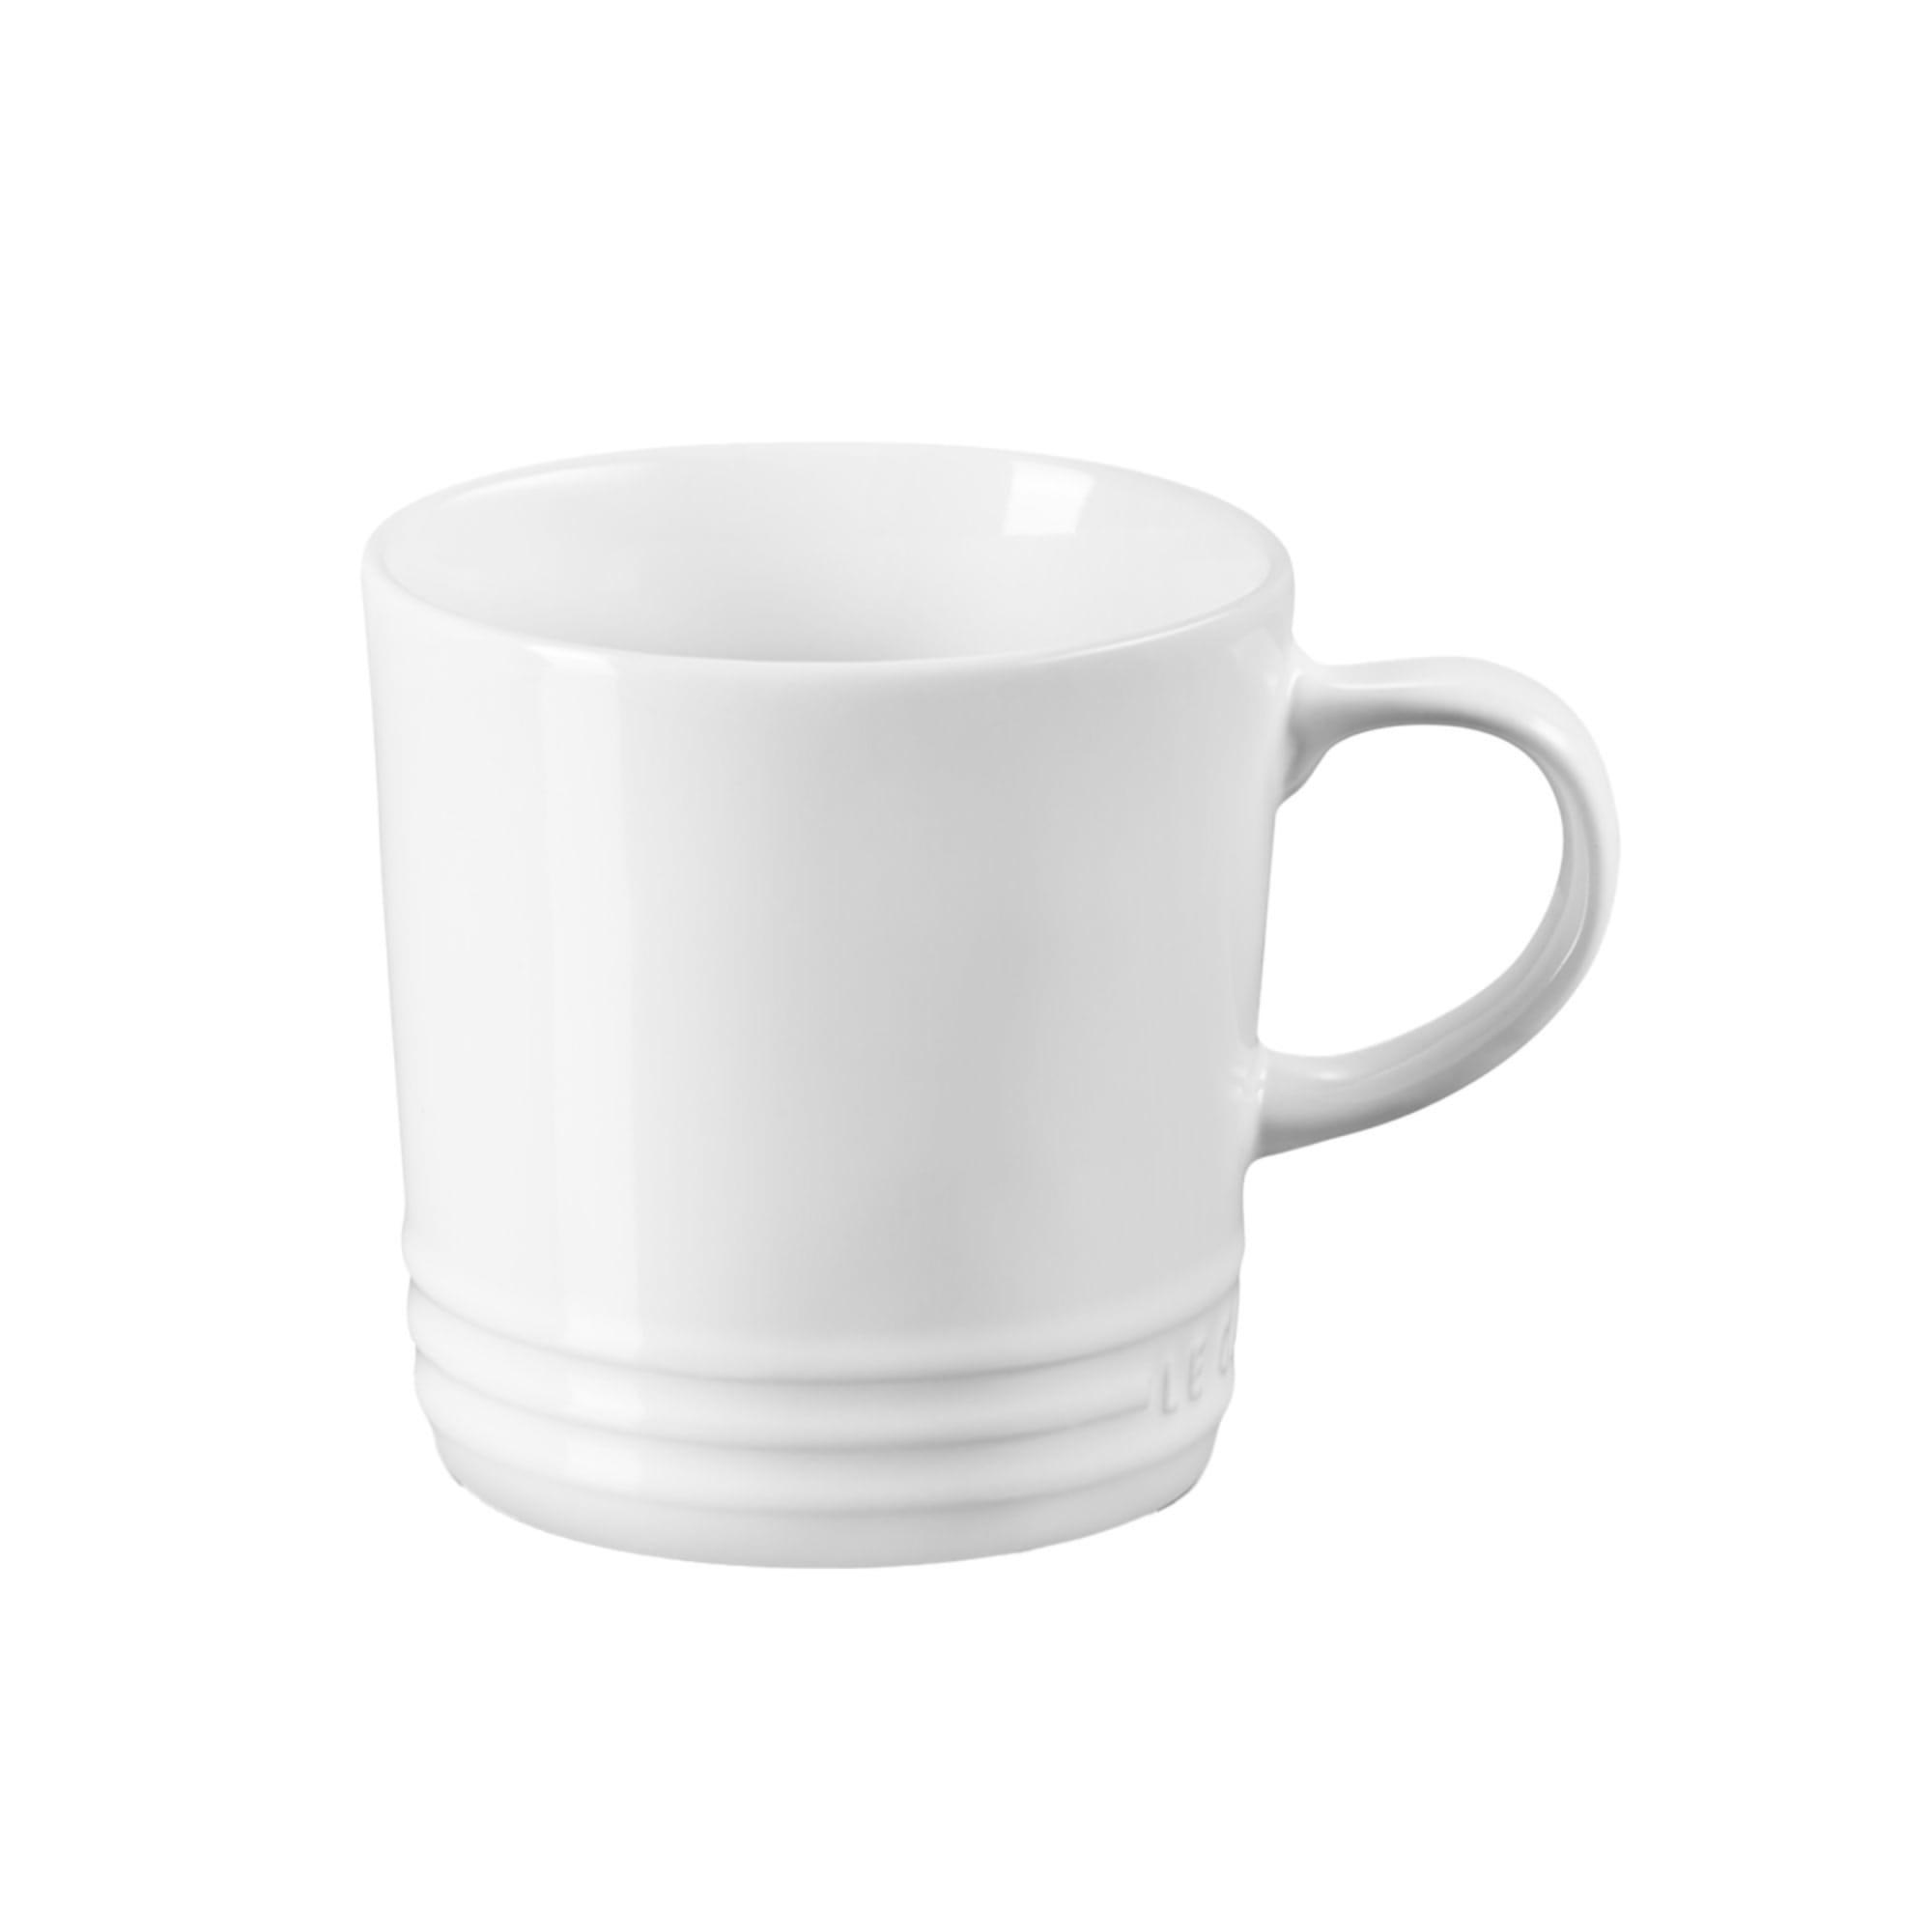 Le Creuset Stoneware Mug 350ml White Image 1